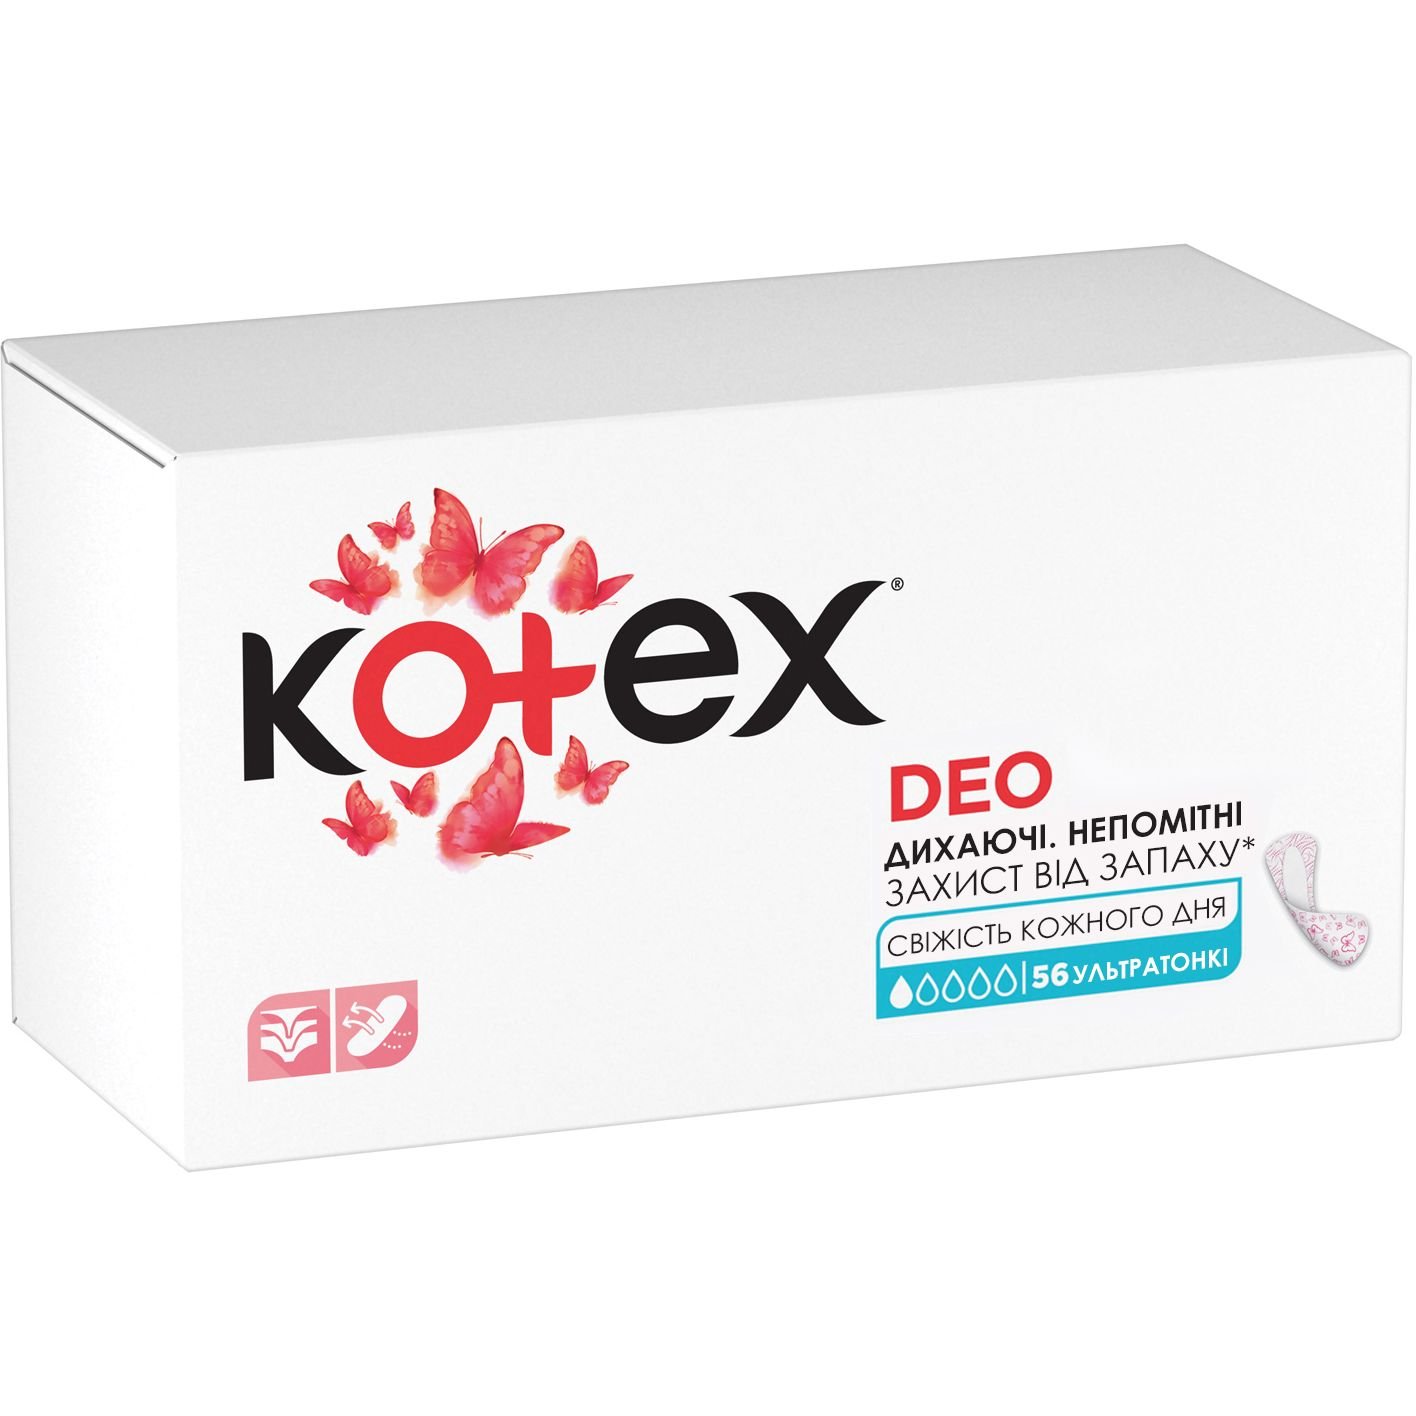 Ежедневные прокладки Kotex Ultraslim Deo 56 шт. - фото 7